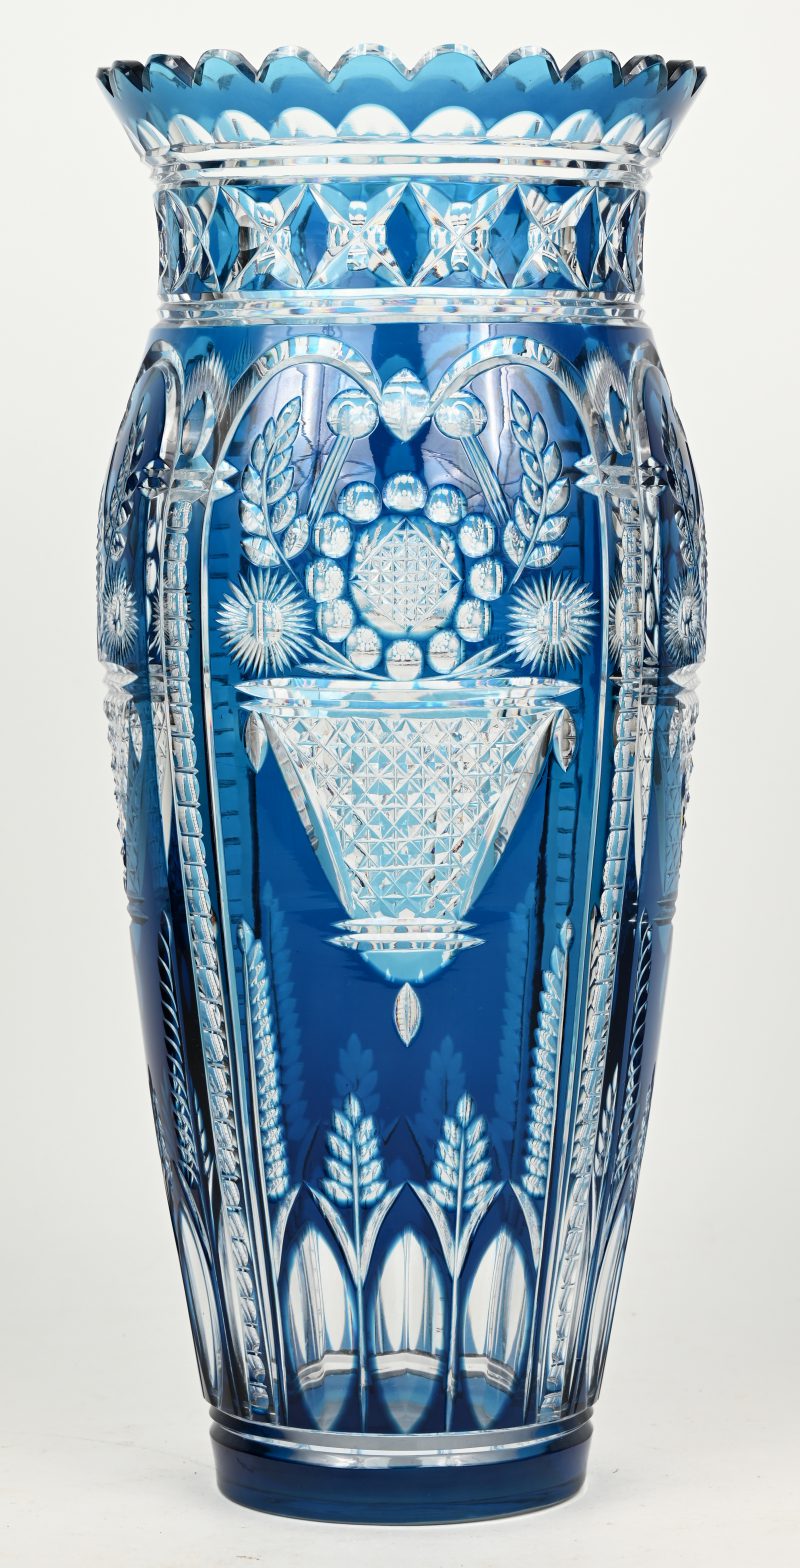 Een grote vaas van blauw gedubbeld kristal met geslepen decor van bloemenmanden en korenhalmen.